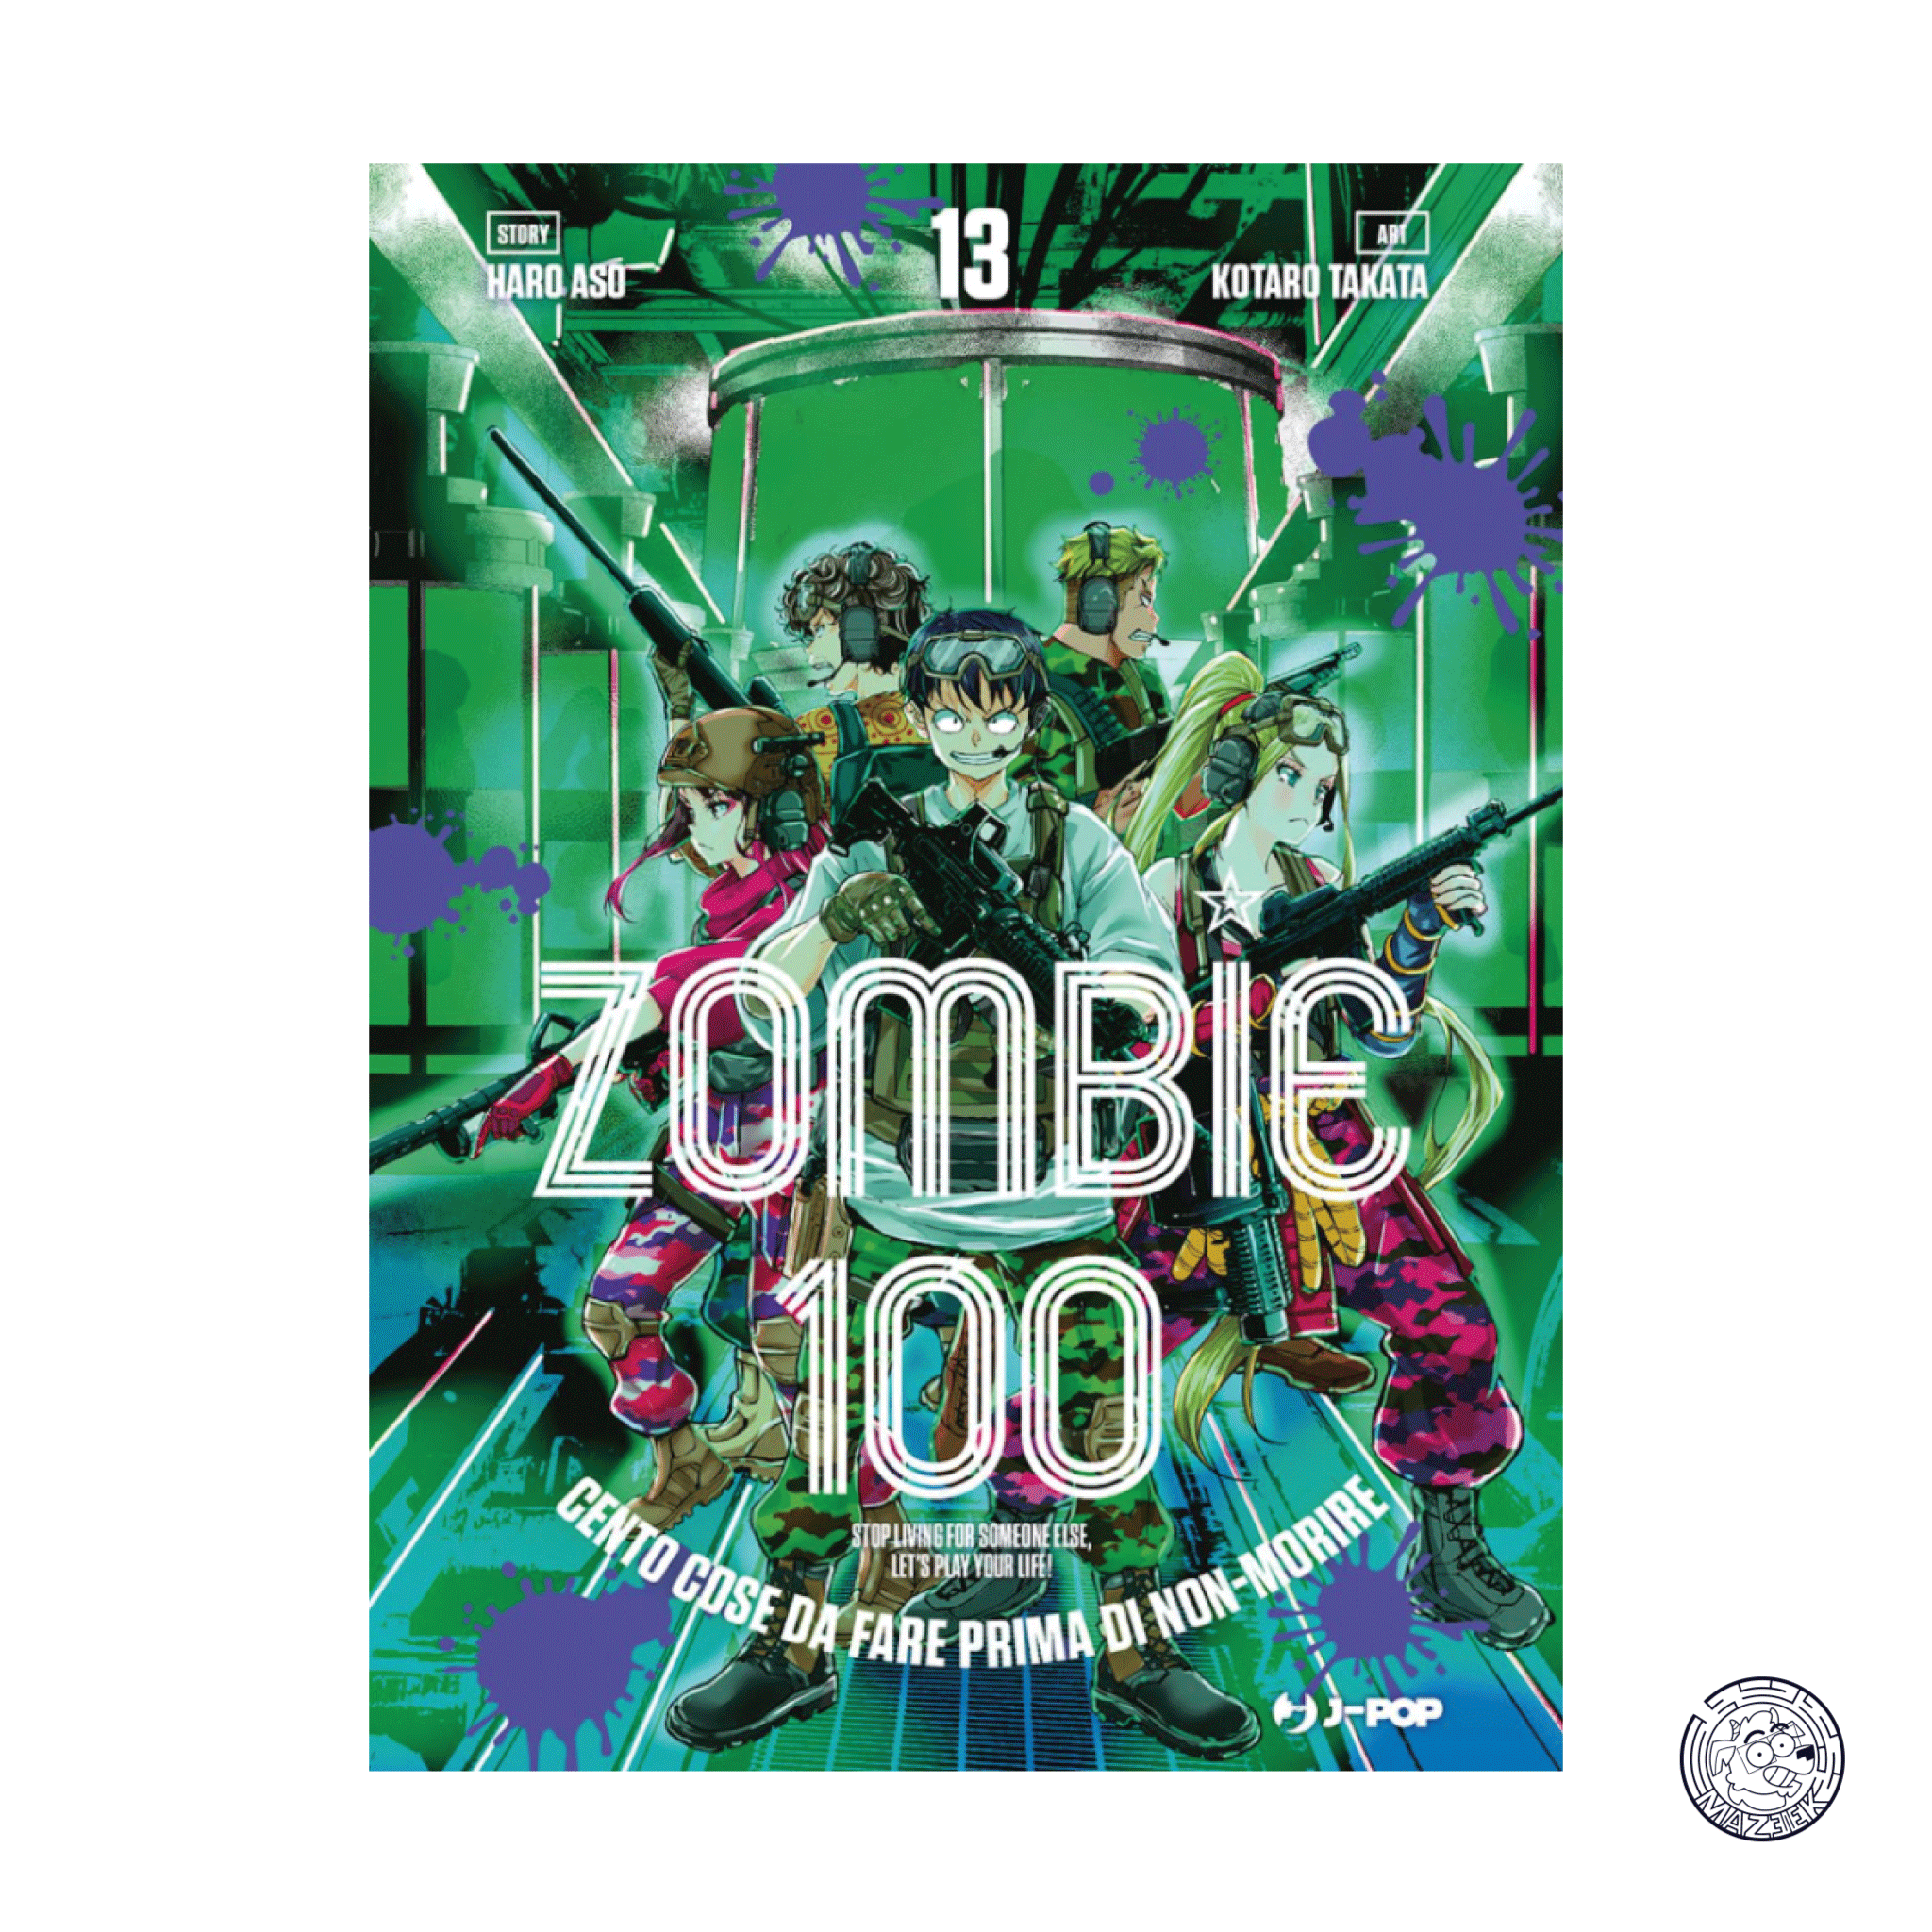 Zombie 100 13